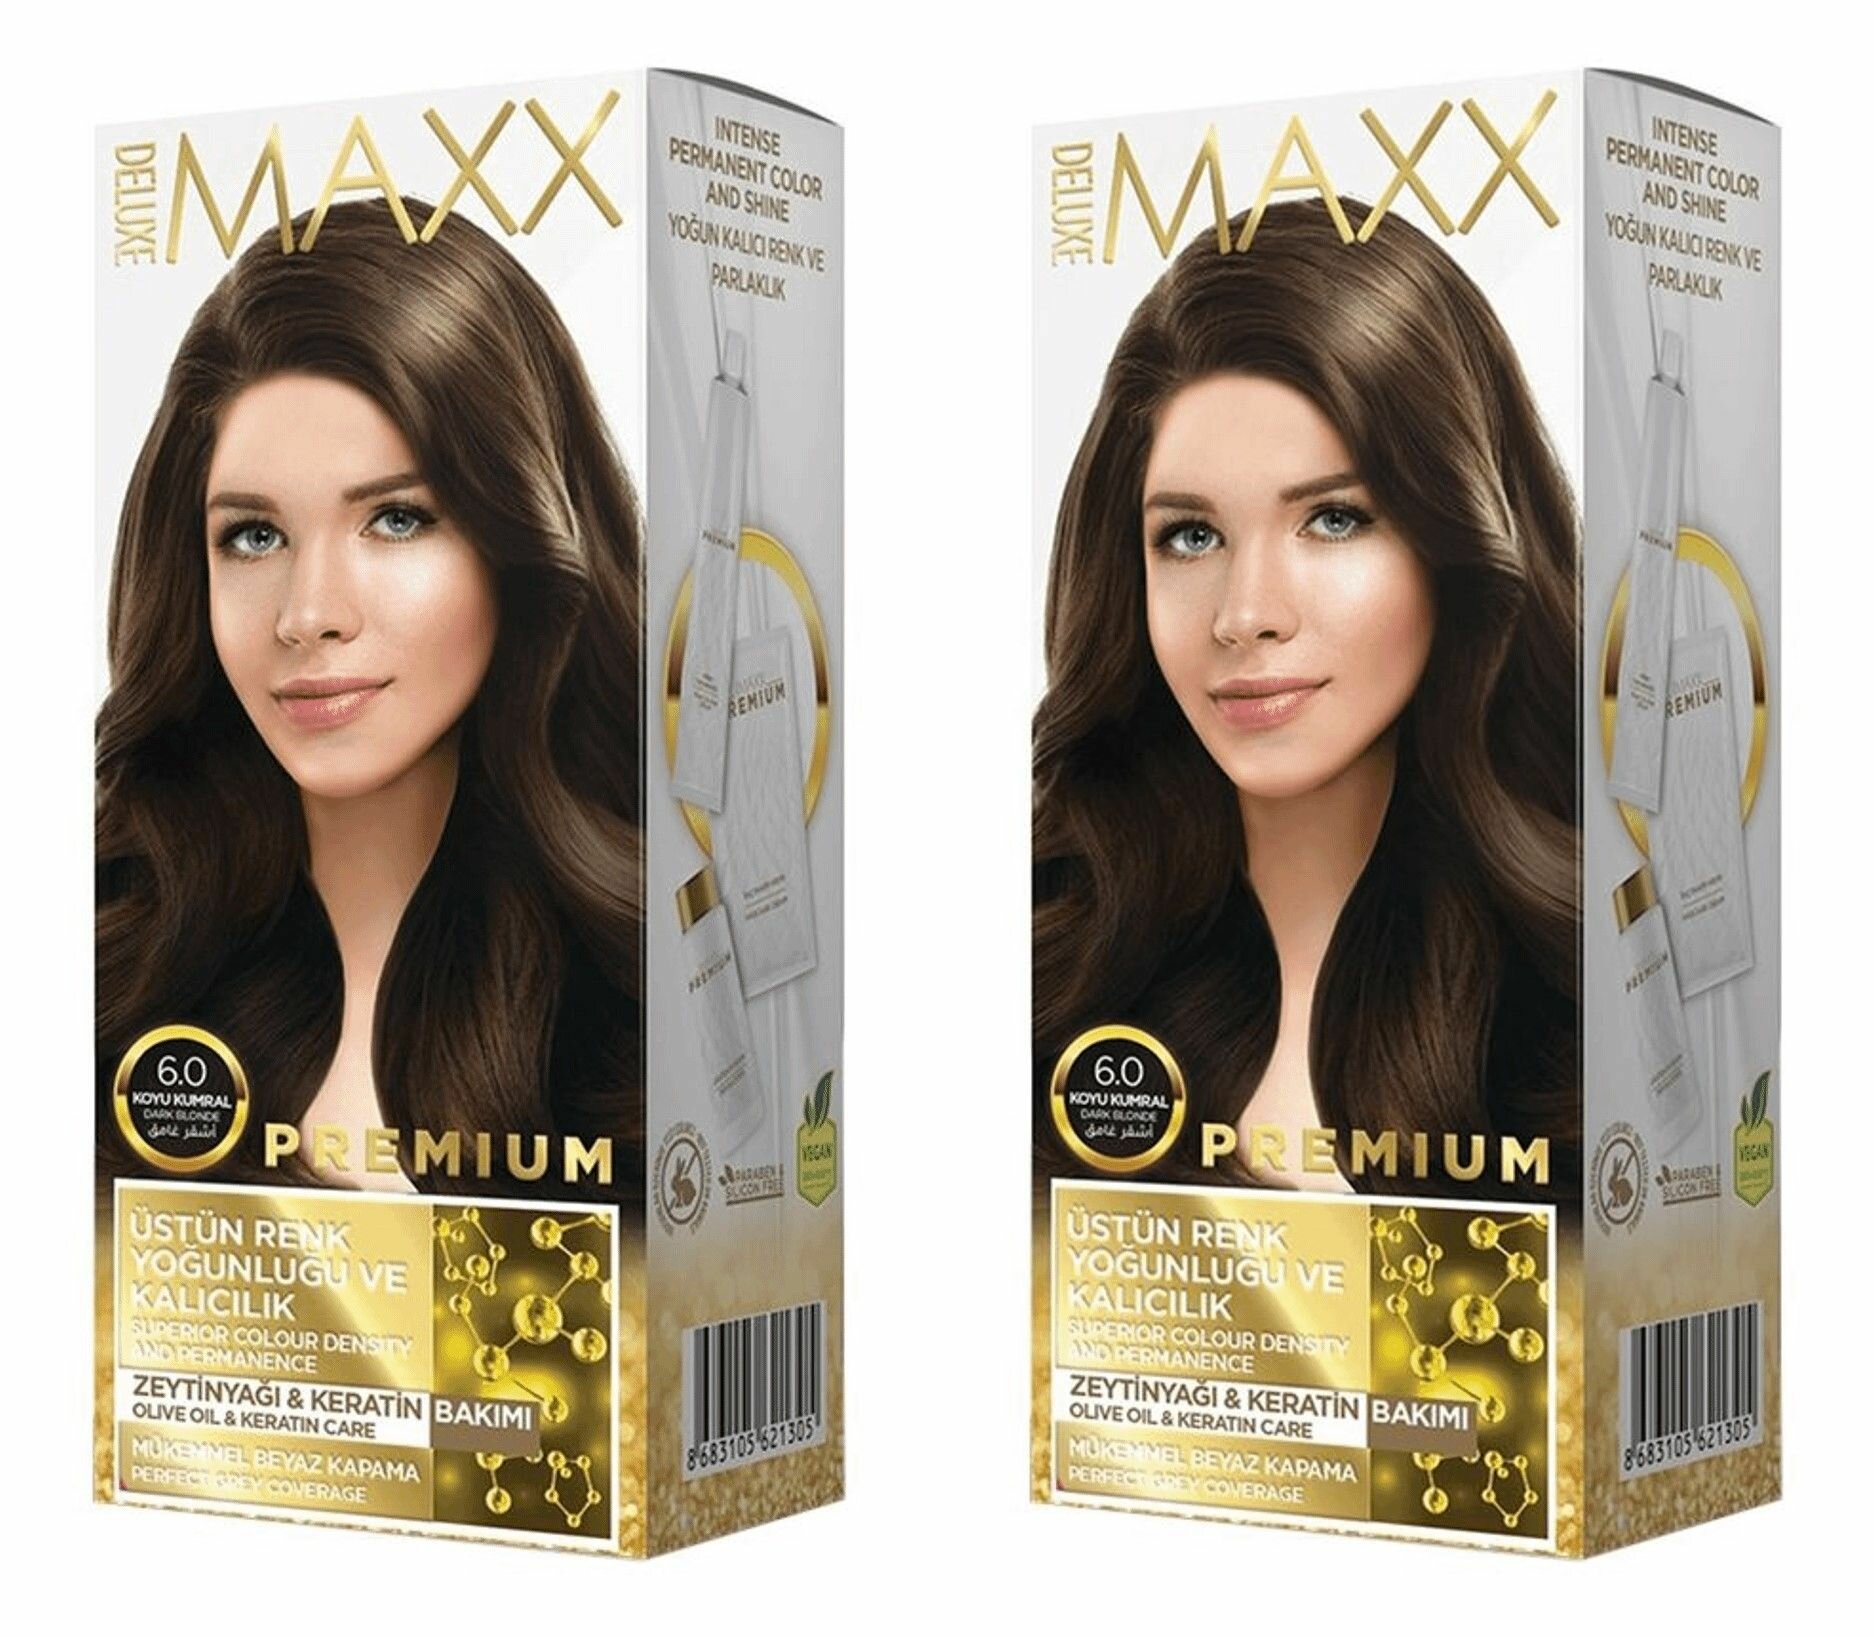 MAXX DELUXE Краска для волос Premium, тон 6.0 Темно-русый, 110 г, 2 шт